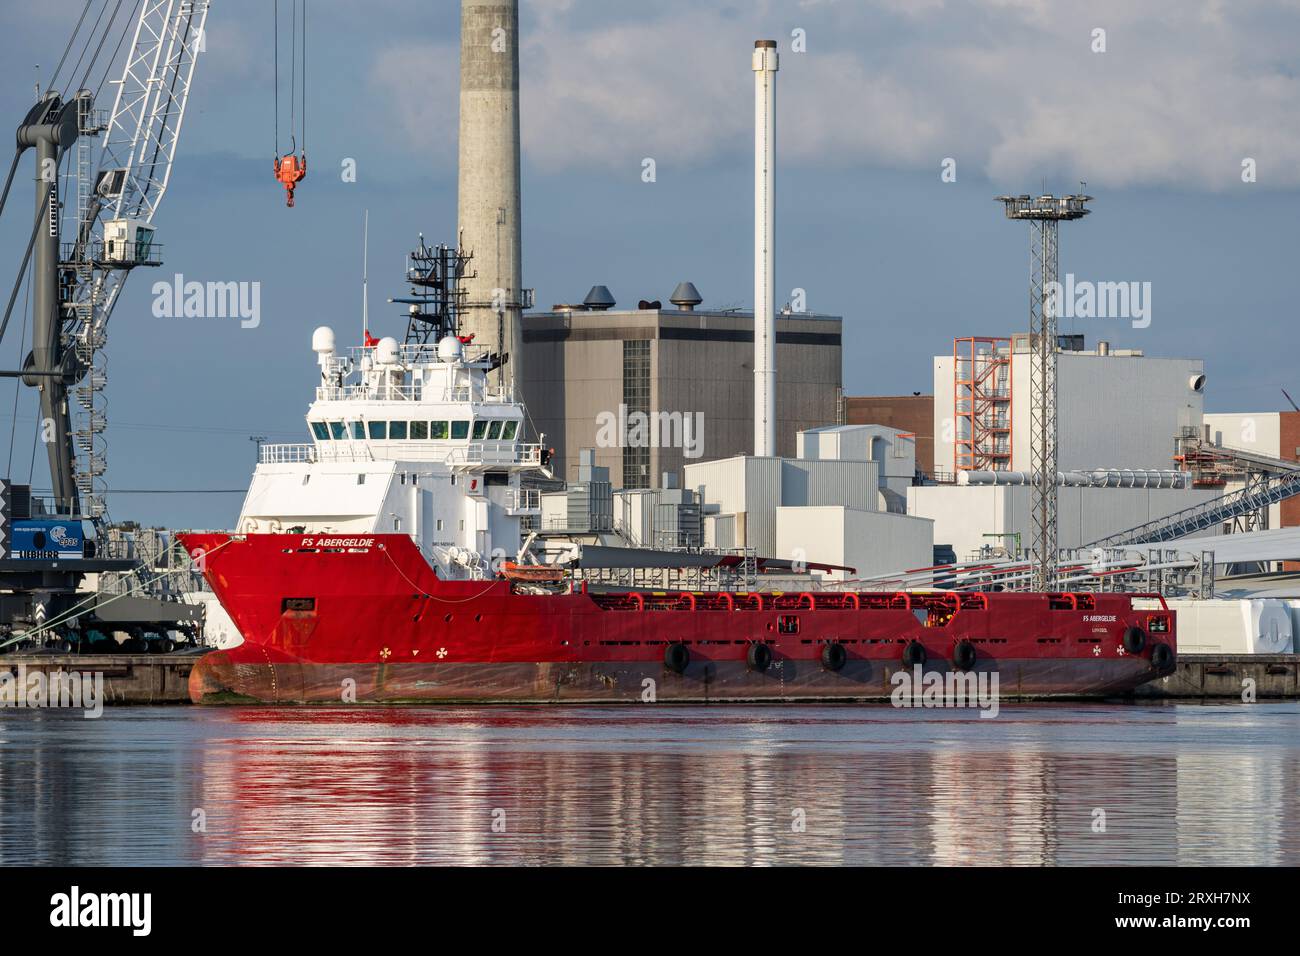 Plattformlieferschiff „FS Abergeldie“ im Hafen von Emden, Deutschland Stockfoto